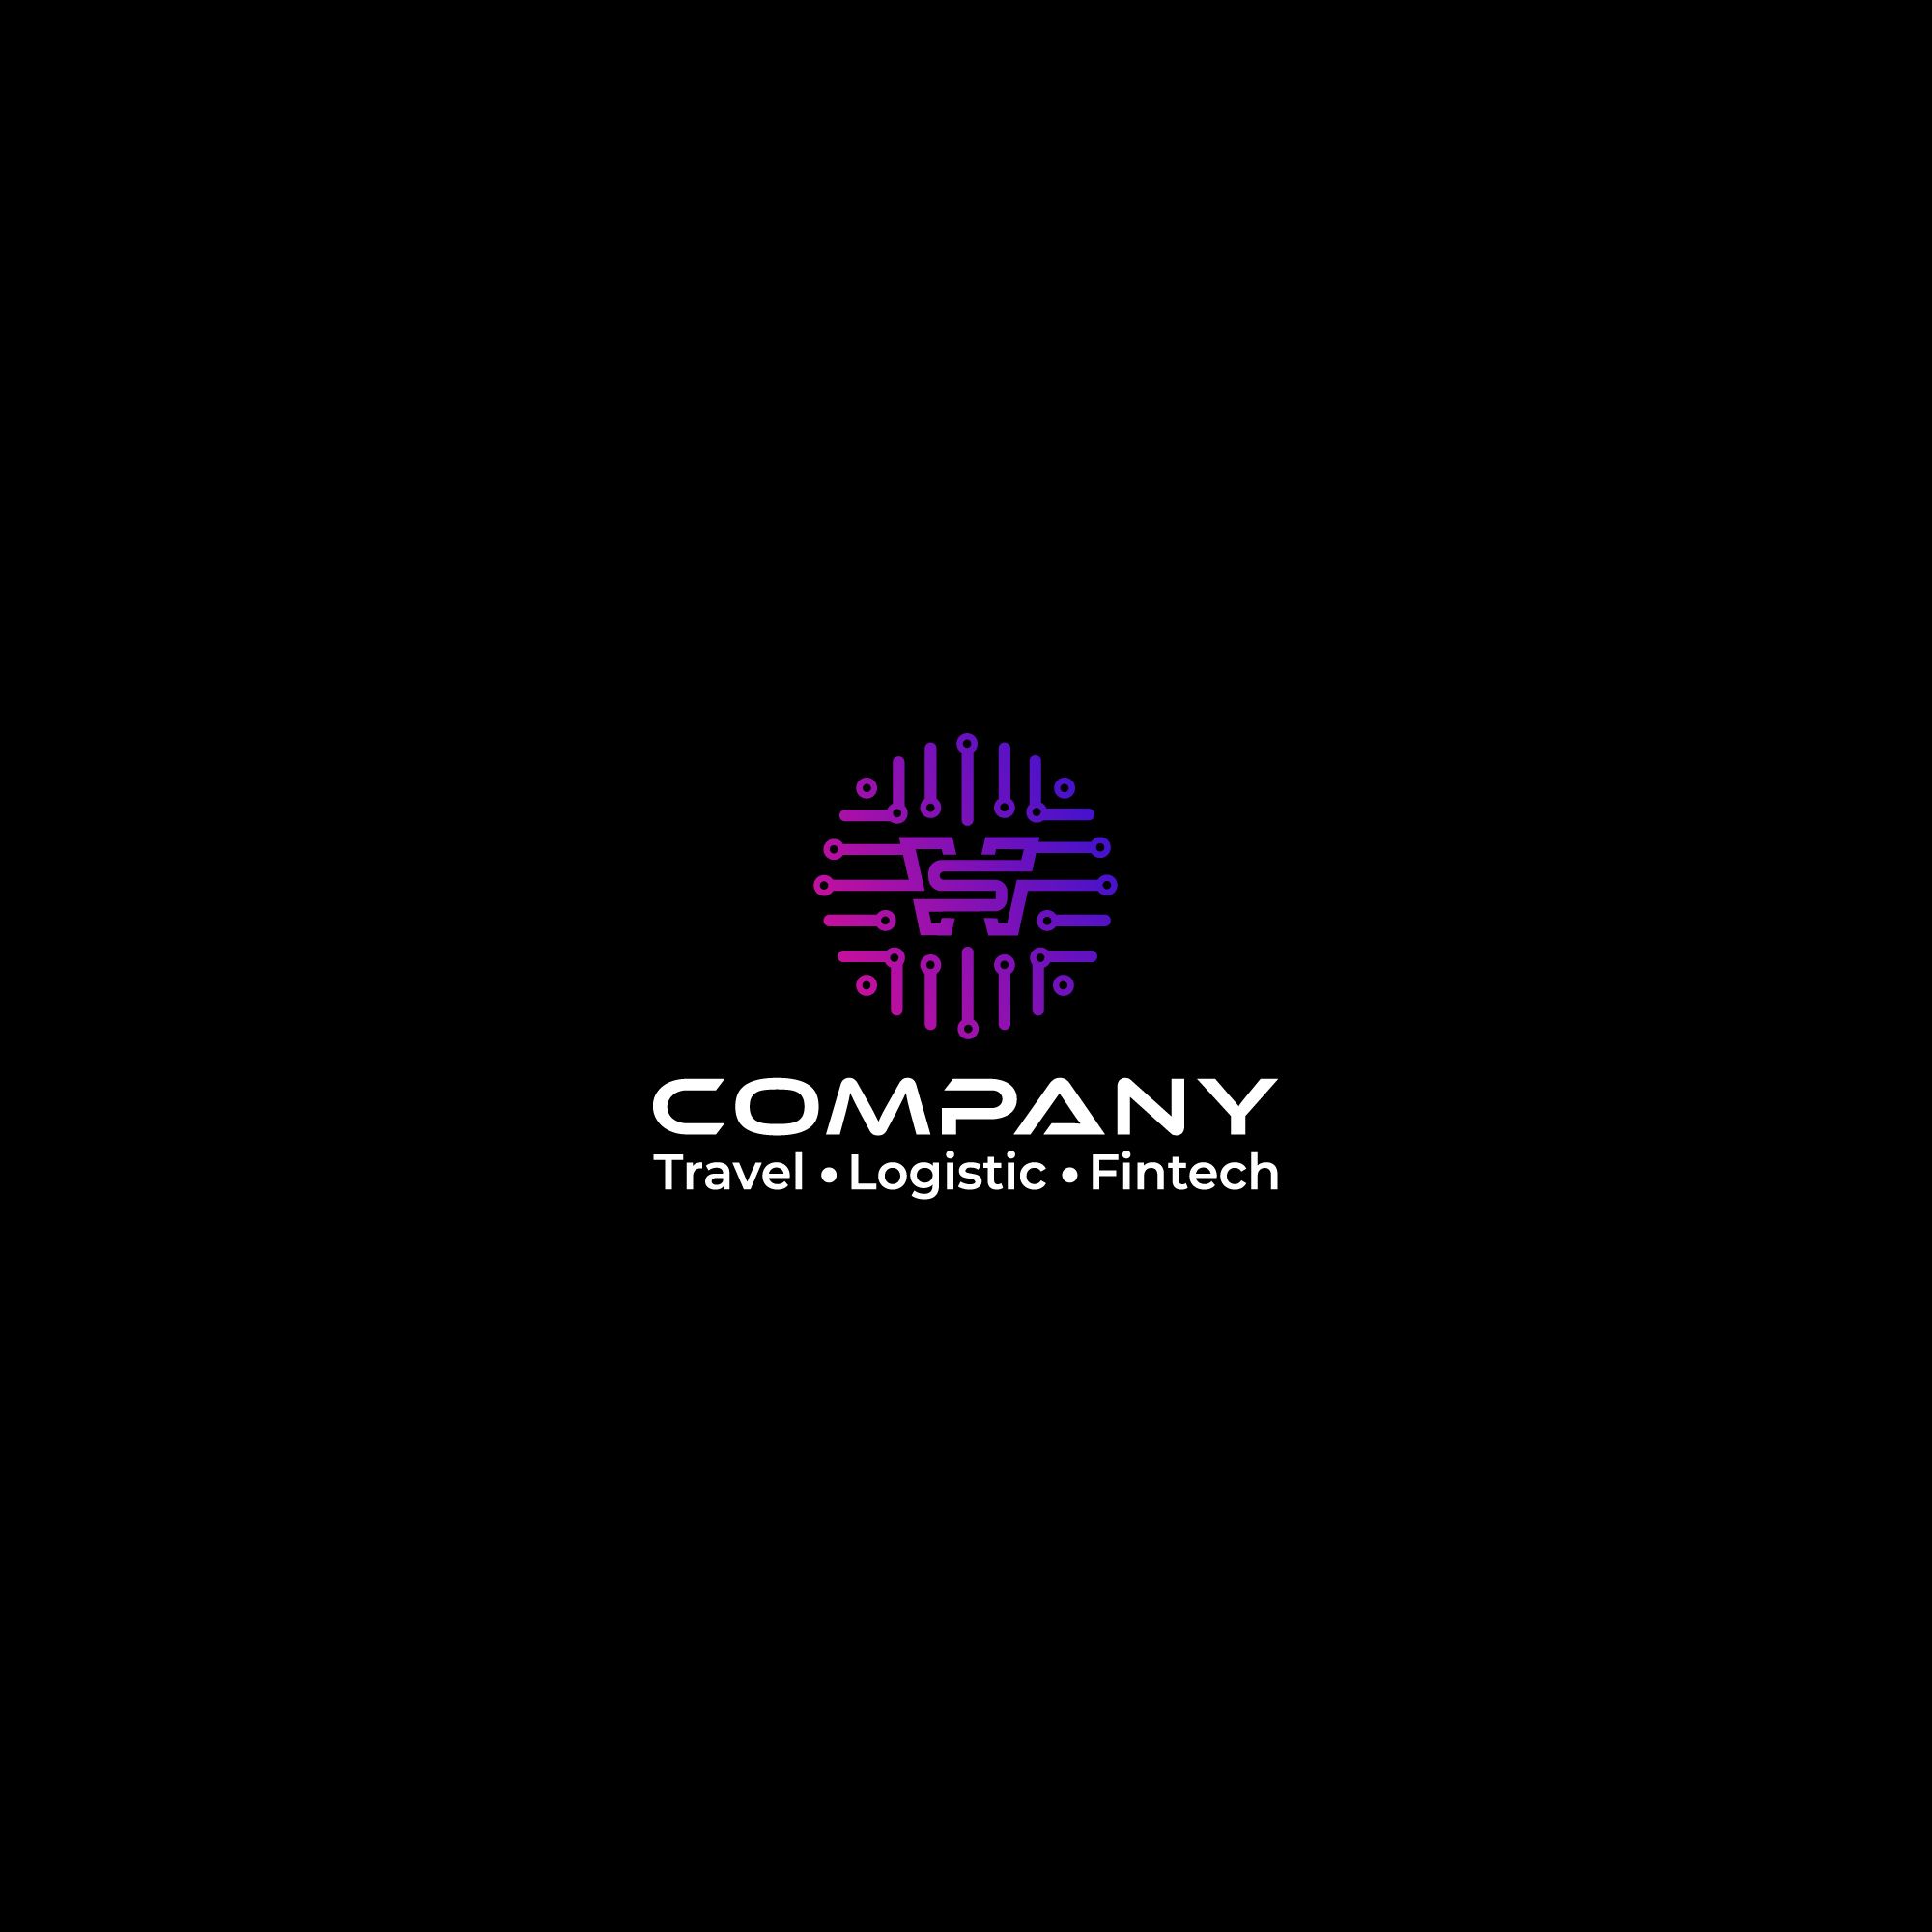 Логотип для WS.Company — Travel - Logistic - Fintech - дизайнер llogofix